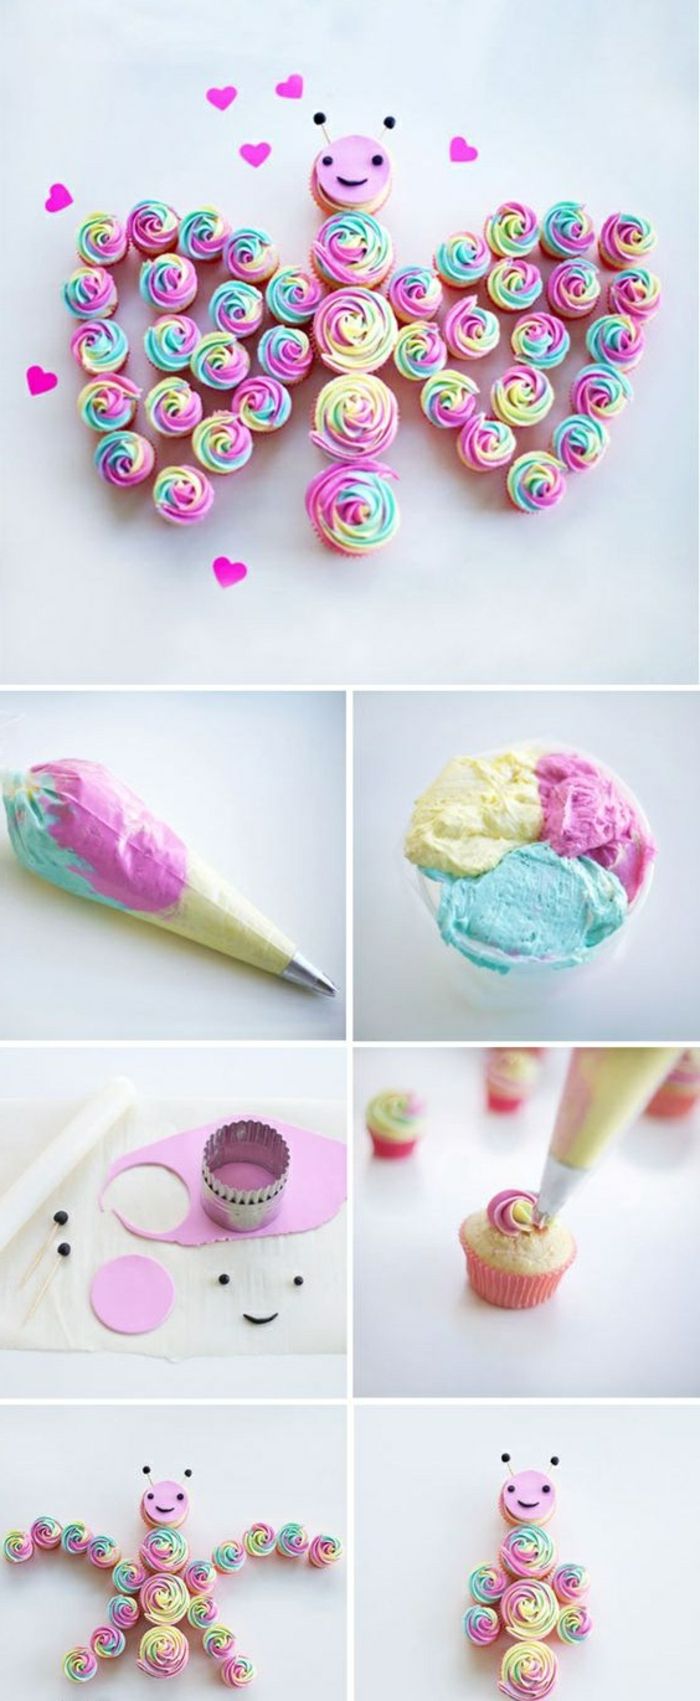 Cupcakes zdobia krémom rôznych farieb, motýľ